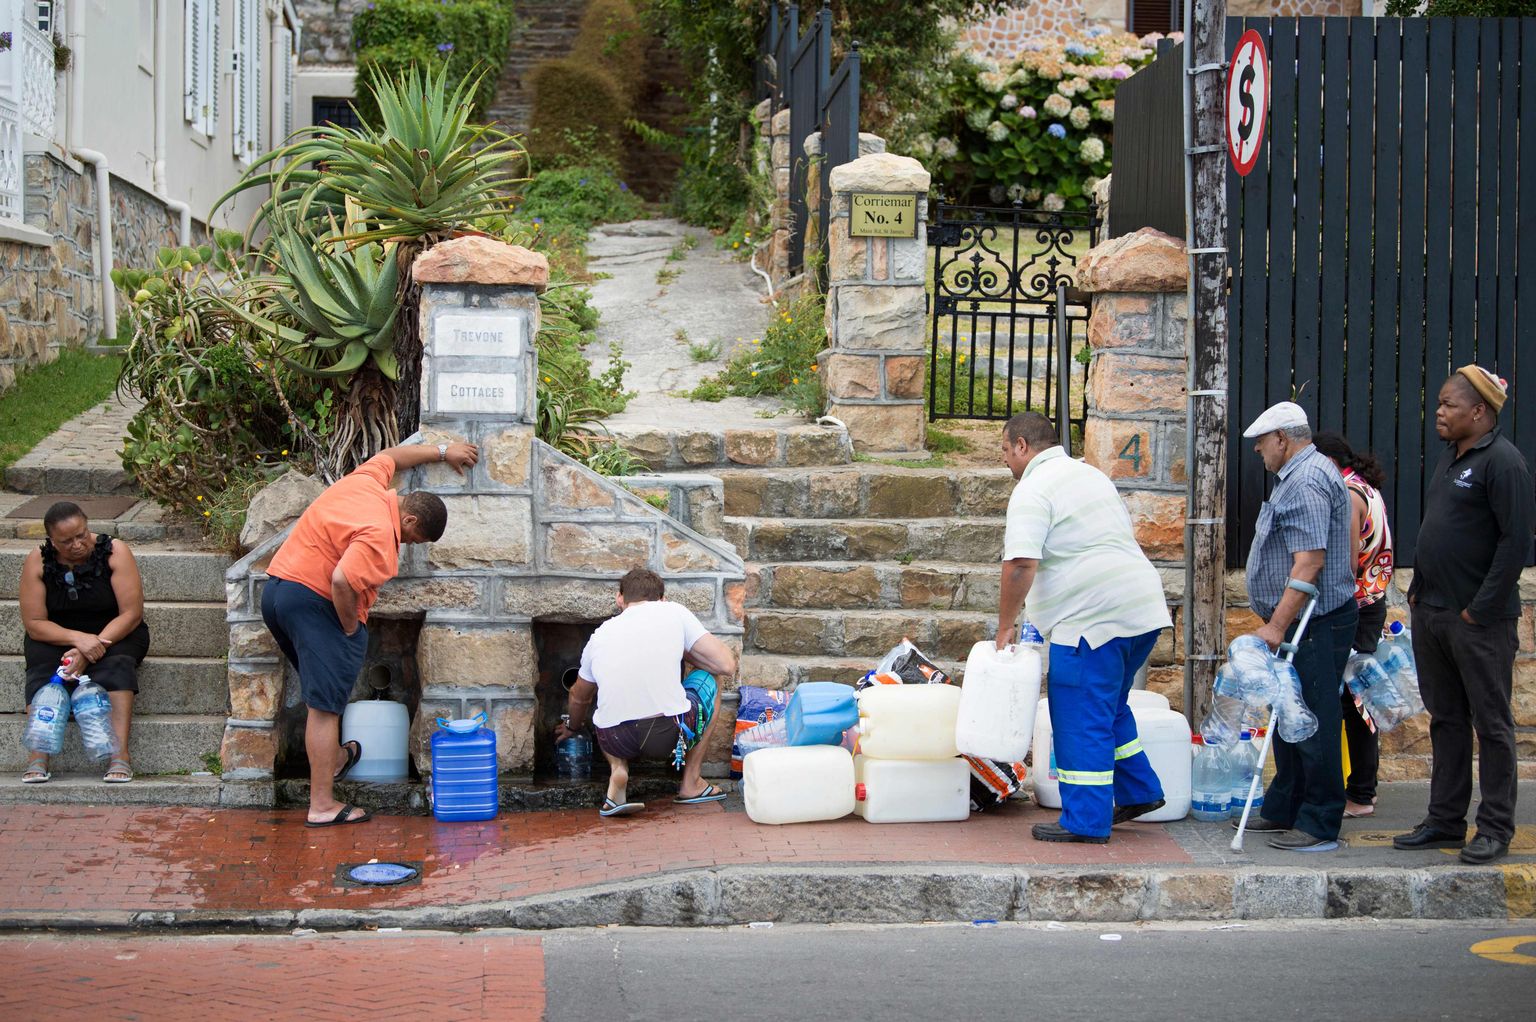 Inimesed Kaplinna keskusest 25 kilomeetri kaugusel St. Jamesis veevõtukohas.